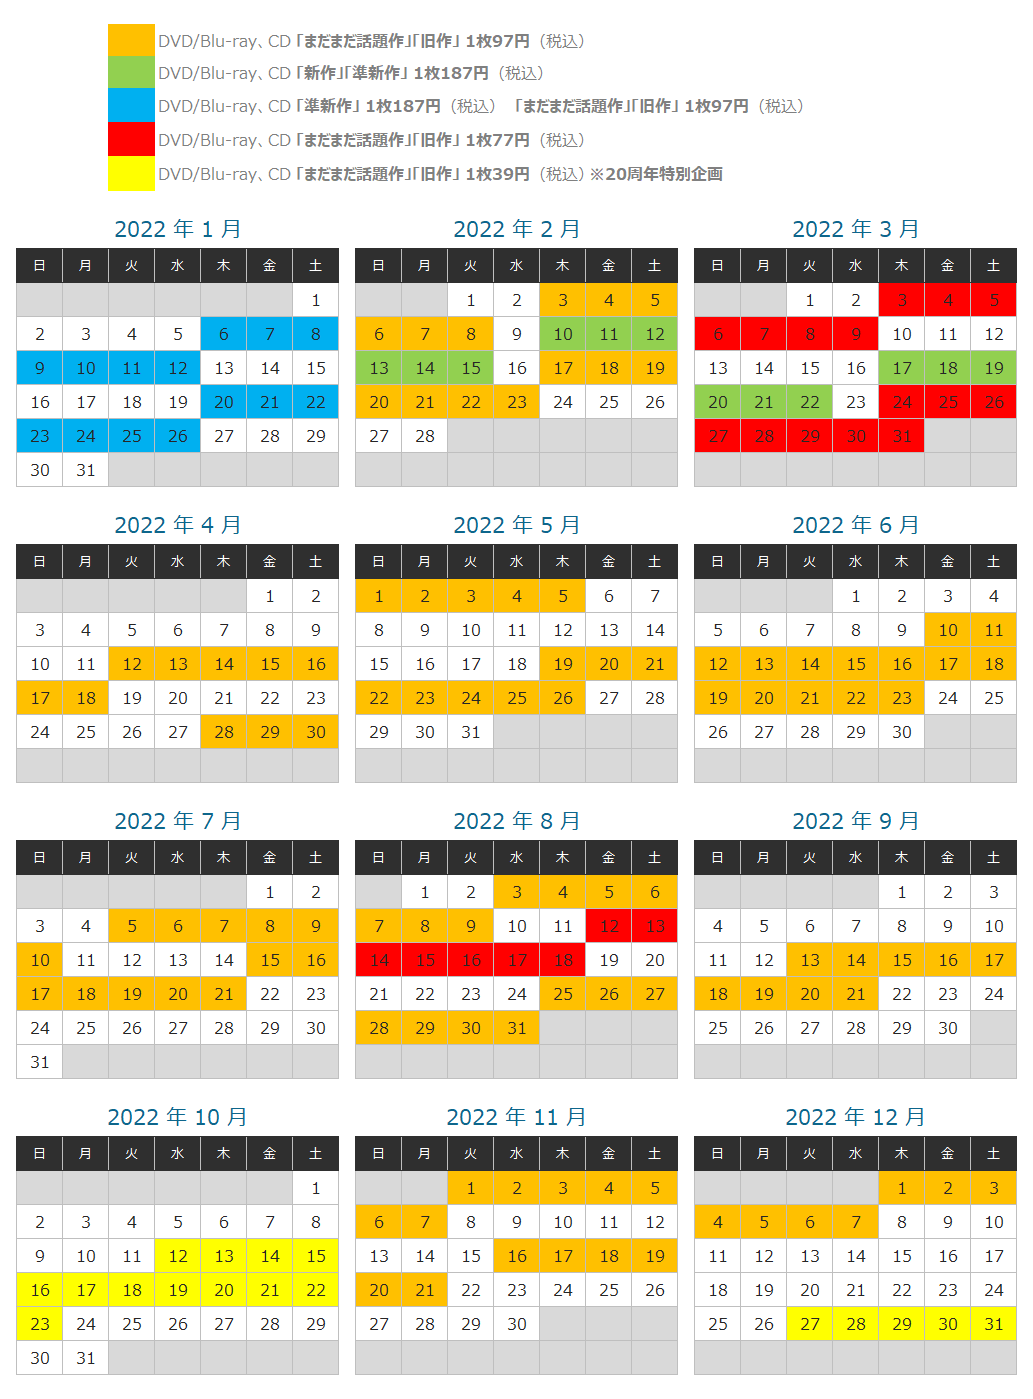 ツタヤディスカス 2022年キャンペーンカレンダー